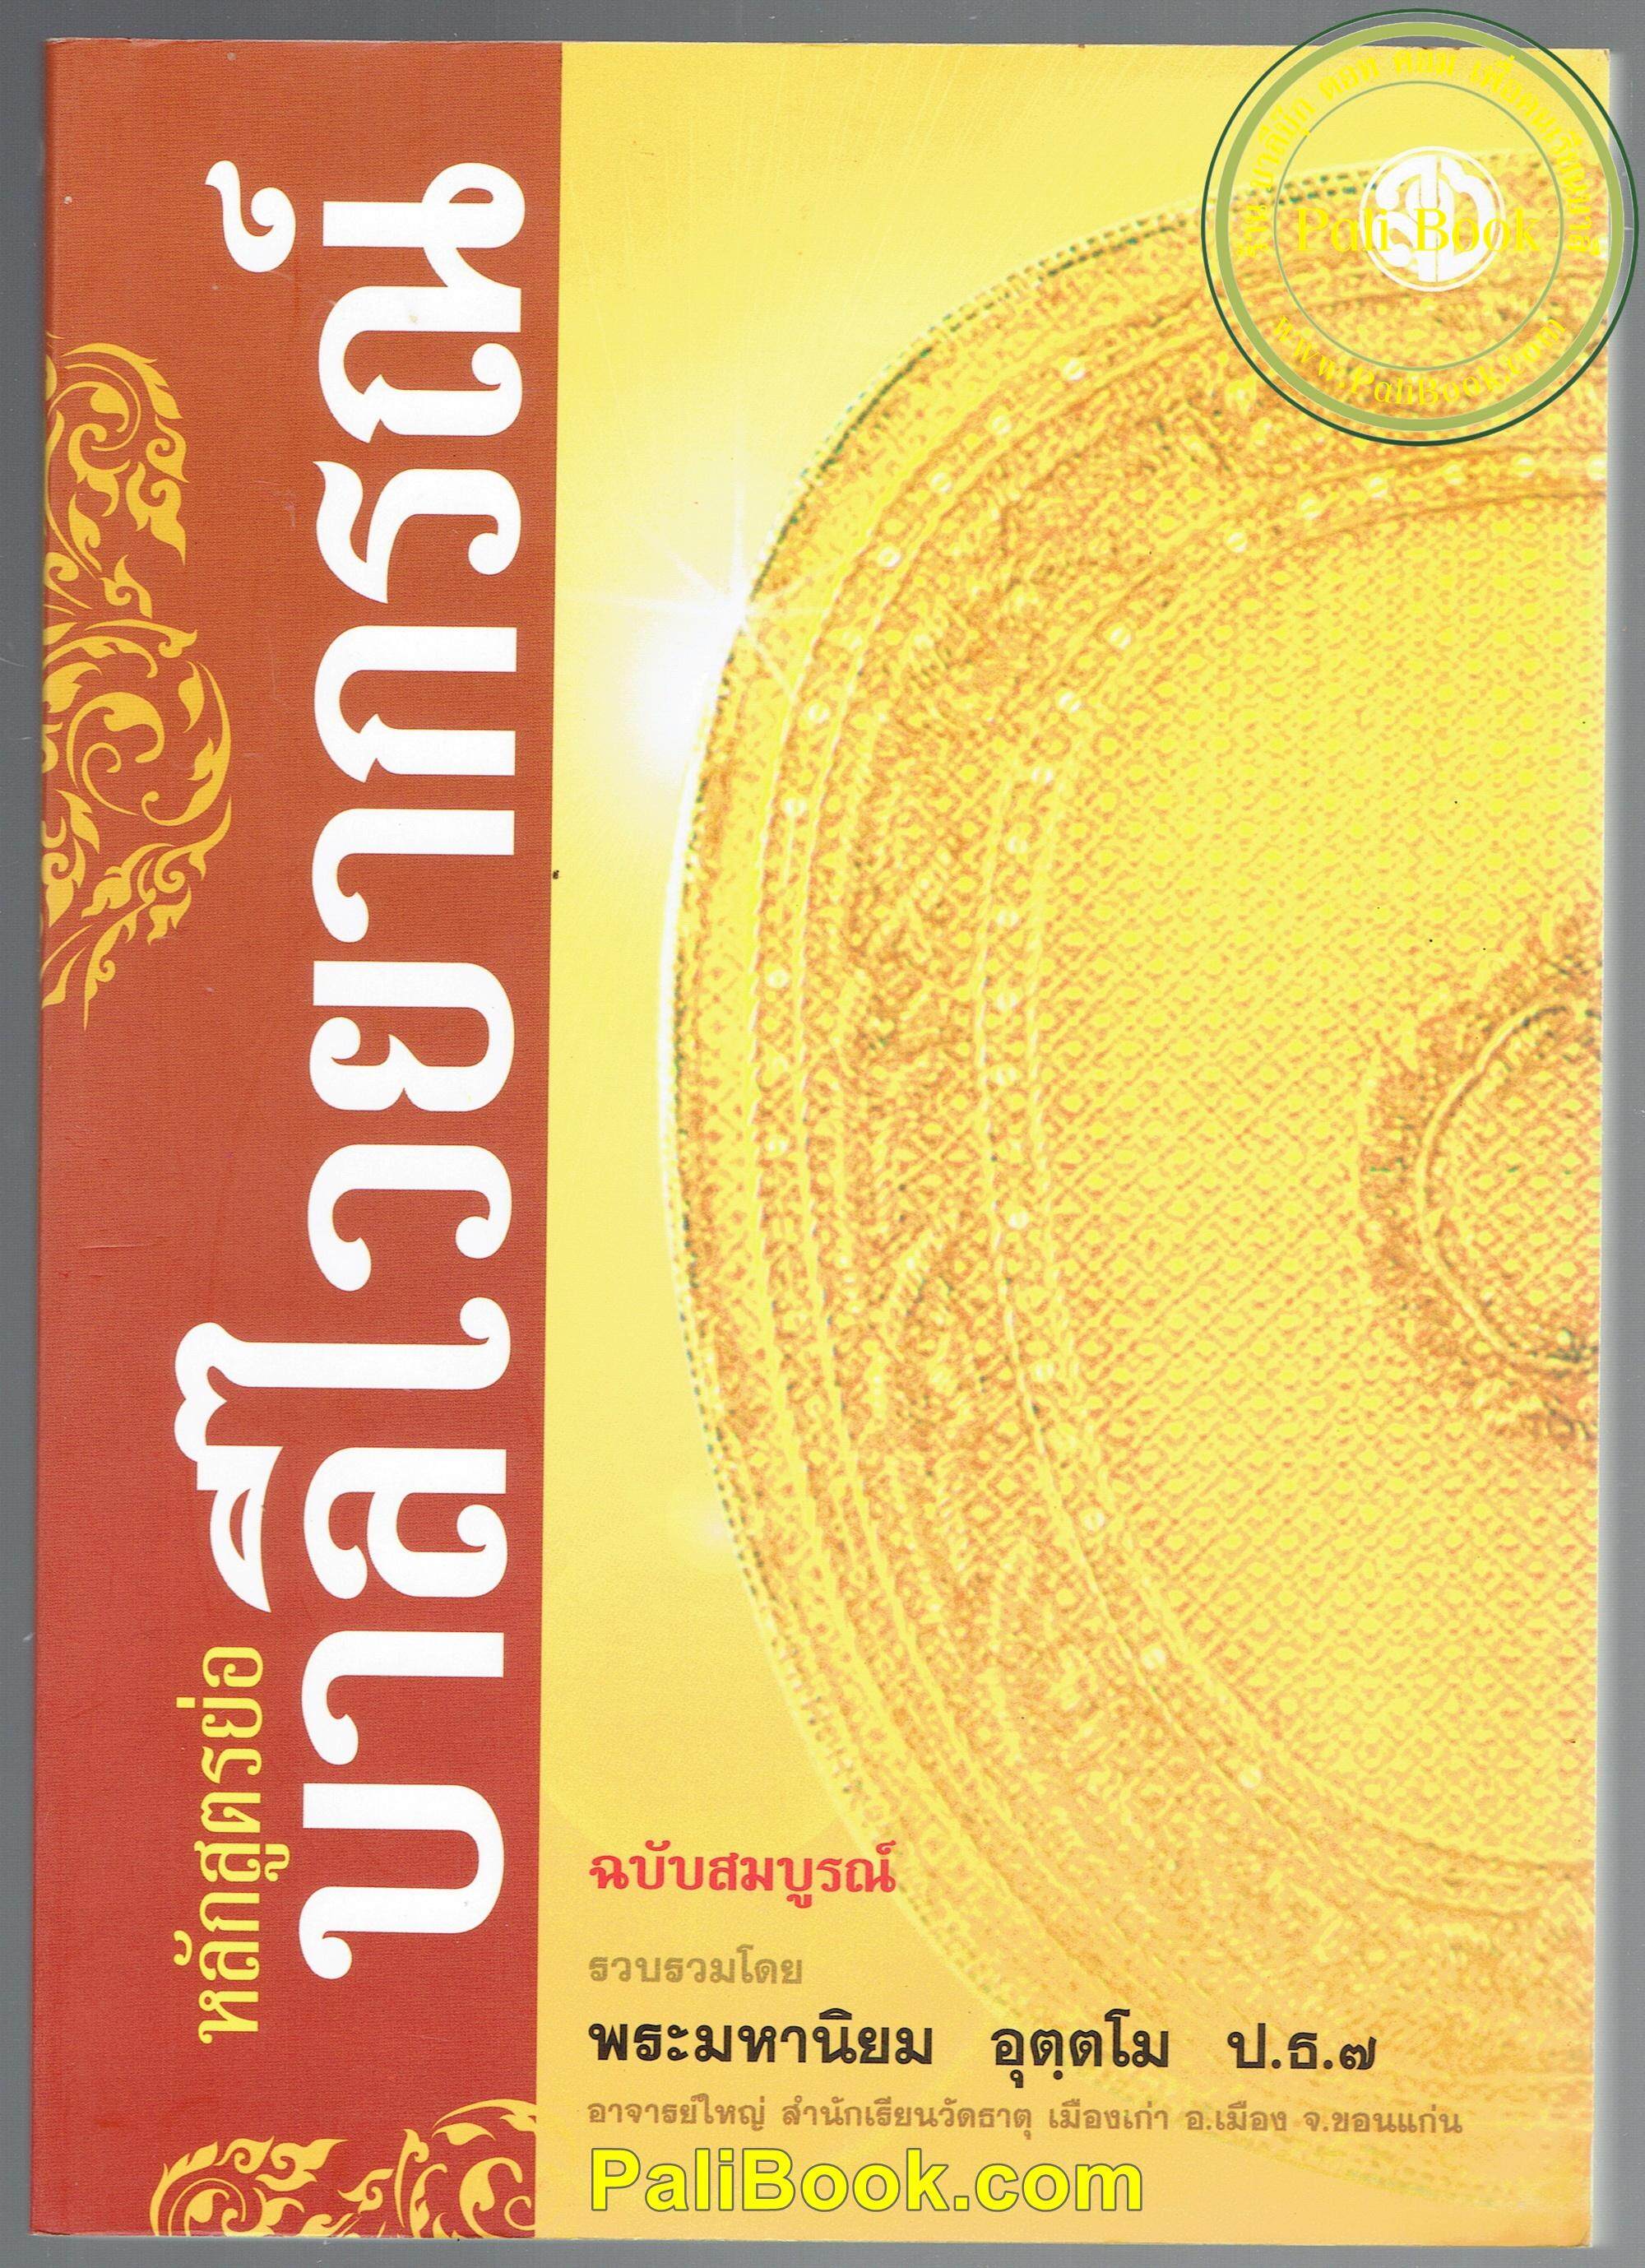 หลักสูตรย่อ บาลีไวยากรณ์และหลักสัมพันธ์ไทย ฉบับสมบูรณ์ (ฉบับท่องจำ) - พระมหานิยม อุตฺตโม - สำนักพิมพ์เลี่ยงเชียง - หนังสือบาลี ร้านบาลีบุ๊ก Palibook